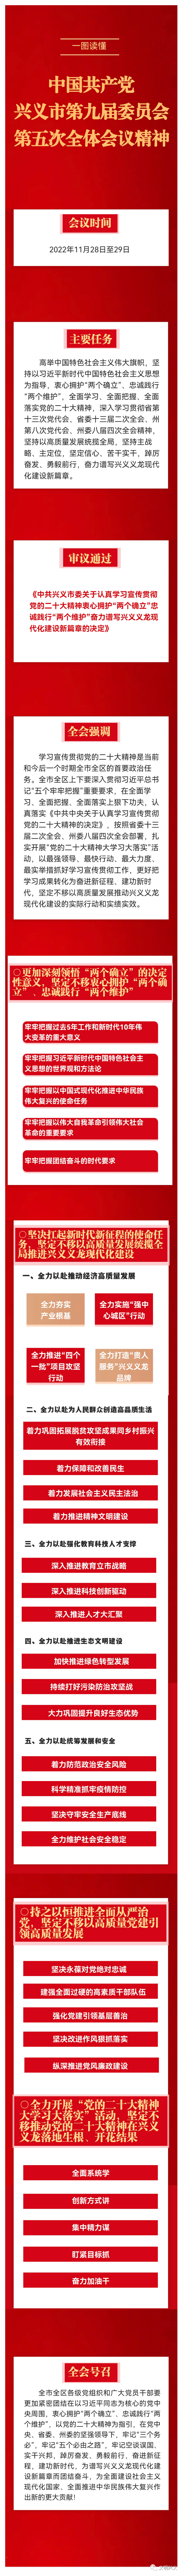 一图读懂中国共产党兴义市第九届委员会第五次全体会议精神